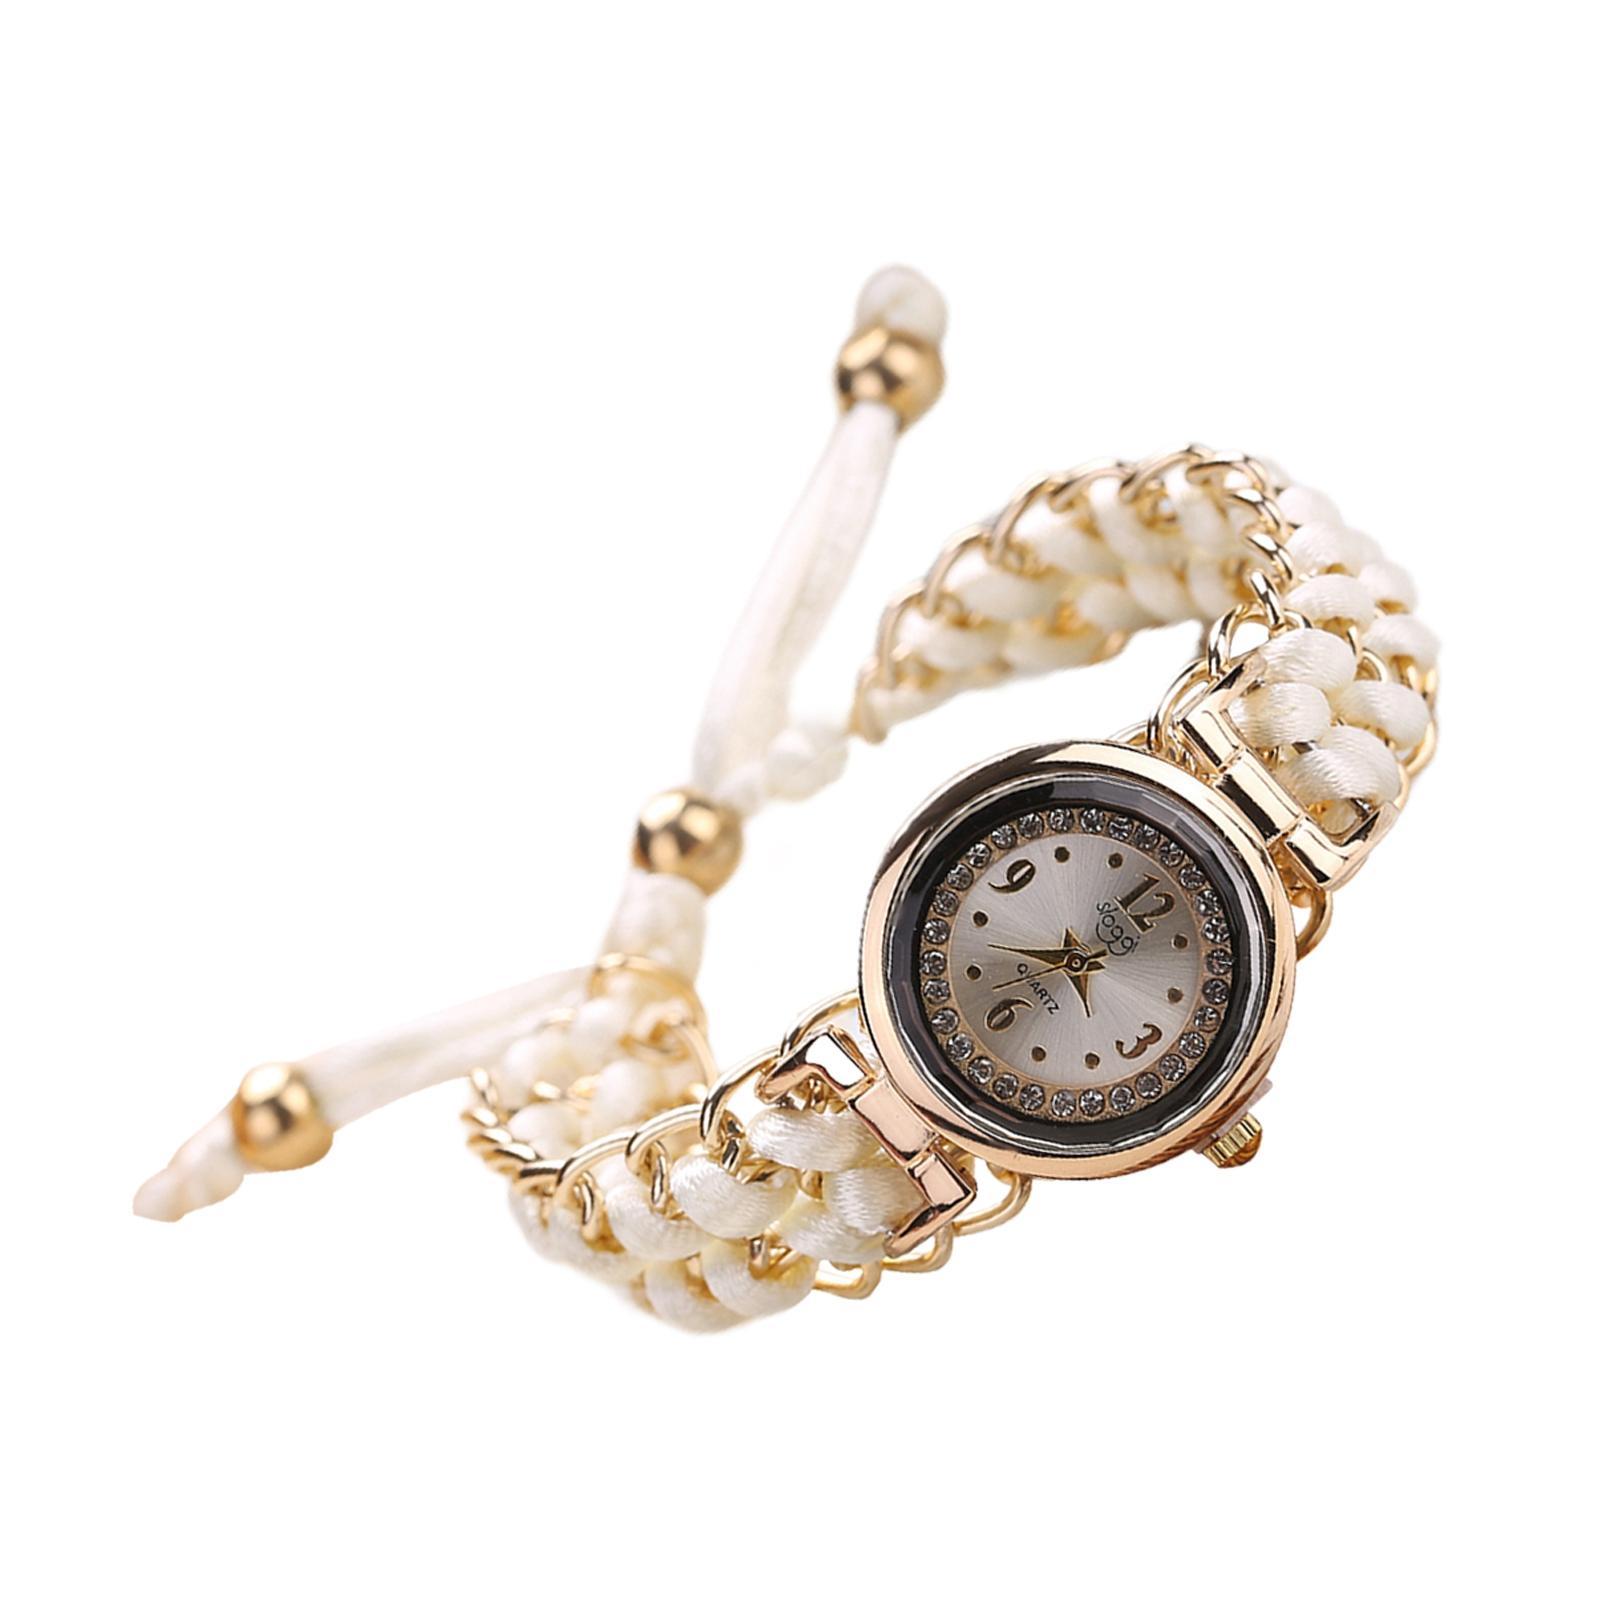 Lady  Watch Bracelet Jewelry Fashion Casual Watch Analog Wrist Watch White